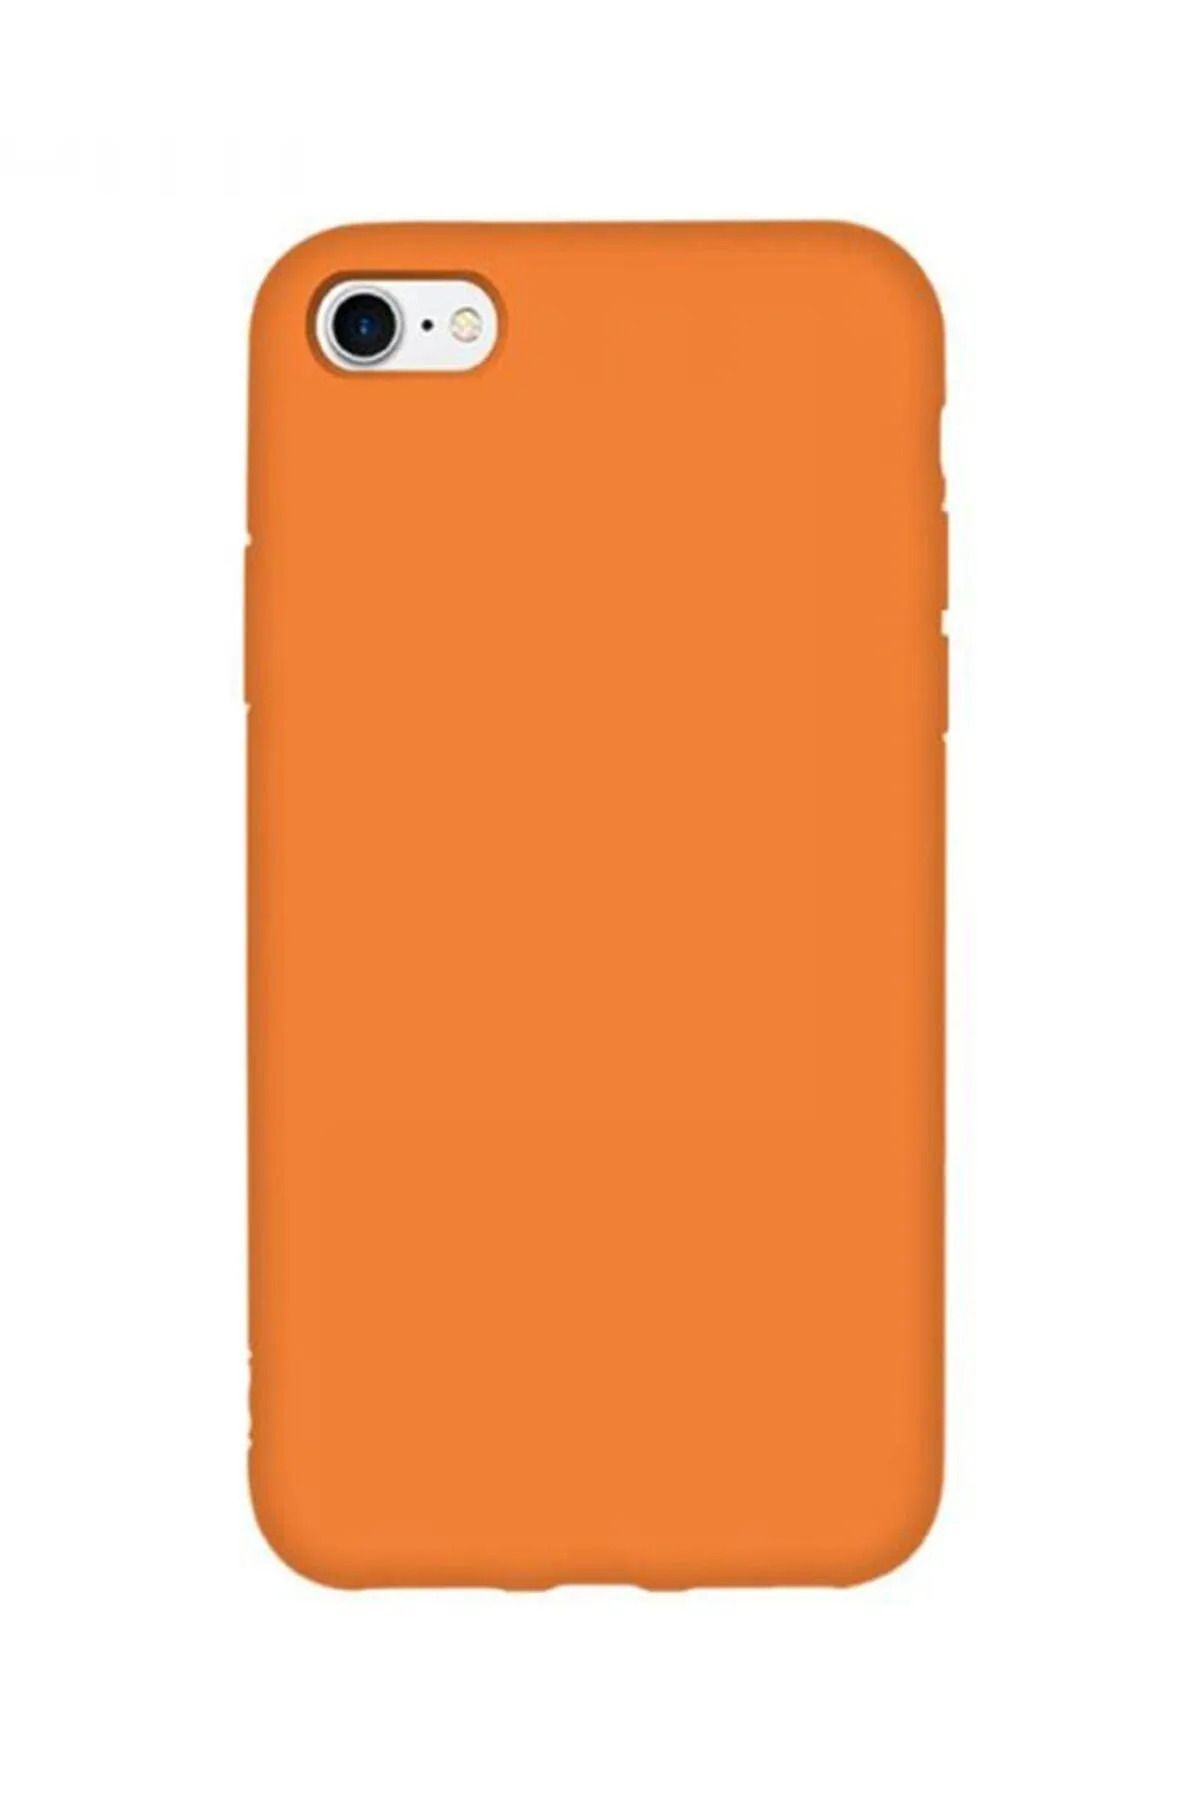 KVK PRİVACY Apple Iphone 7 / 8 / Se 2020 Uyumlu Içi Kadife Lansman Silikon Kılıf Kapak Orange